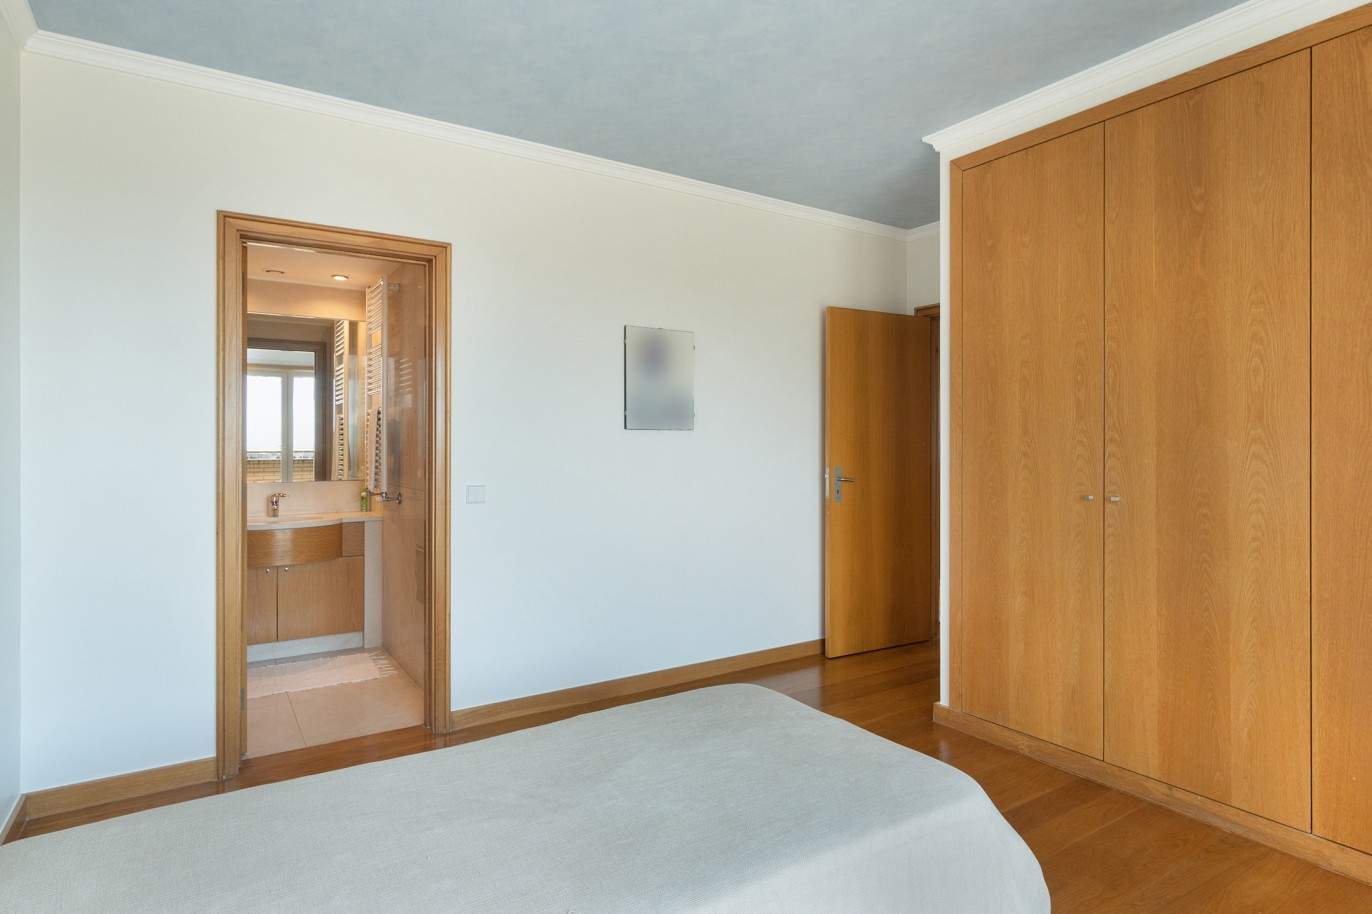 5 bedroom duplex flat with sea views, for sale, Pinhais da Foz, Porto, Portugal_203347